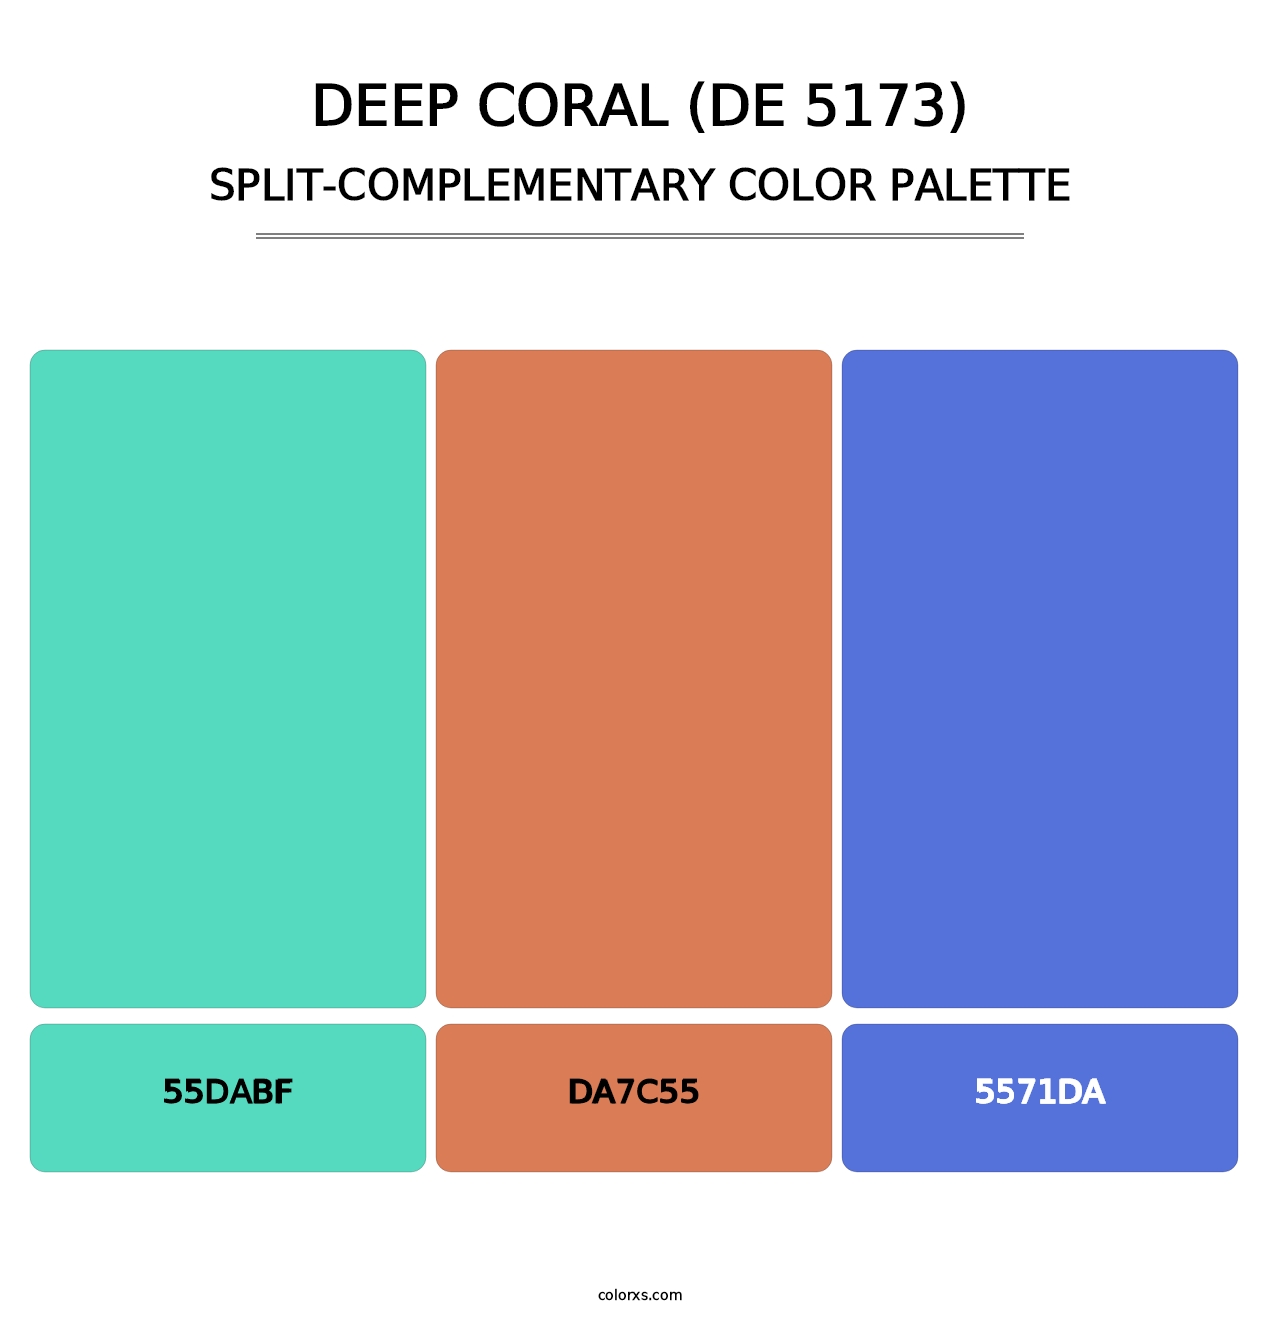 Deep Coral (DE 5173) - Split-Complementary Color Palette